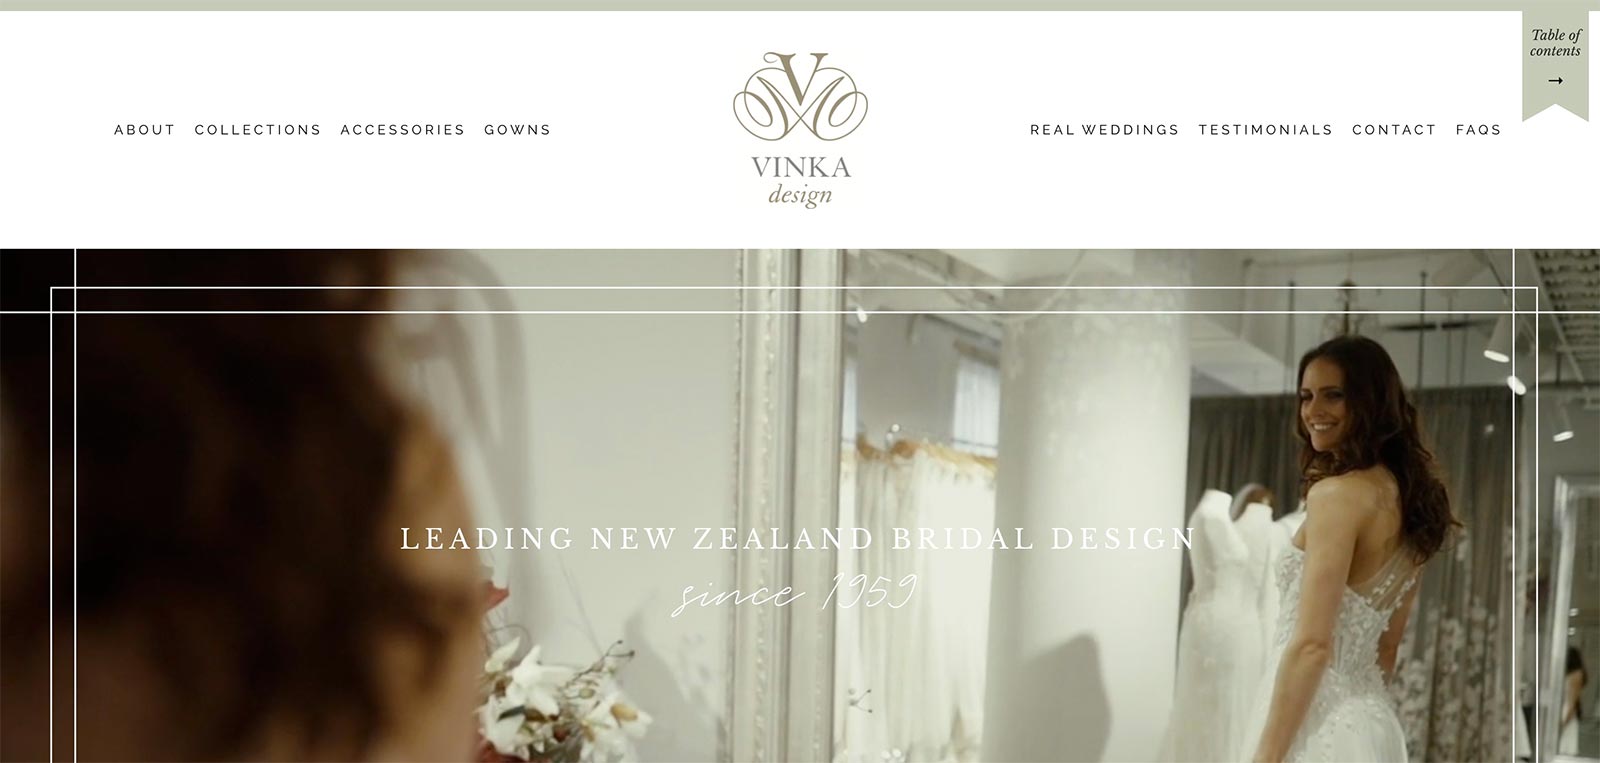 Vinka Design website by BE Business